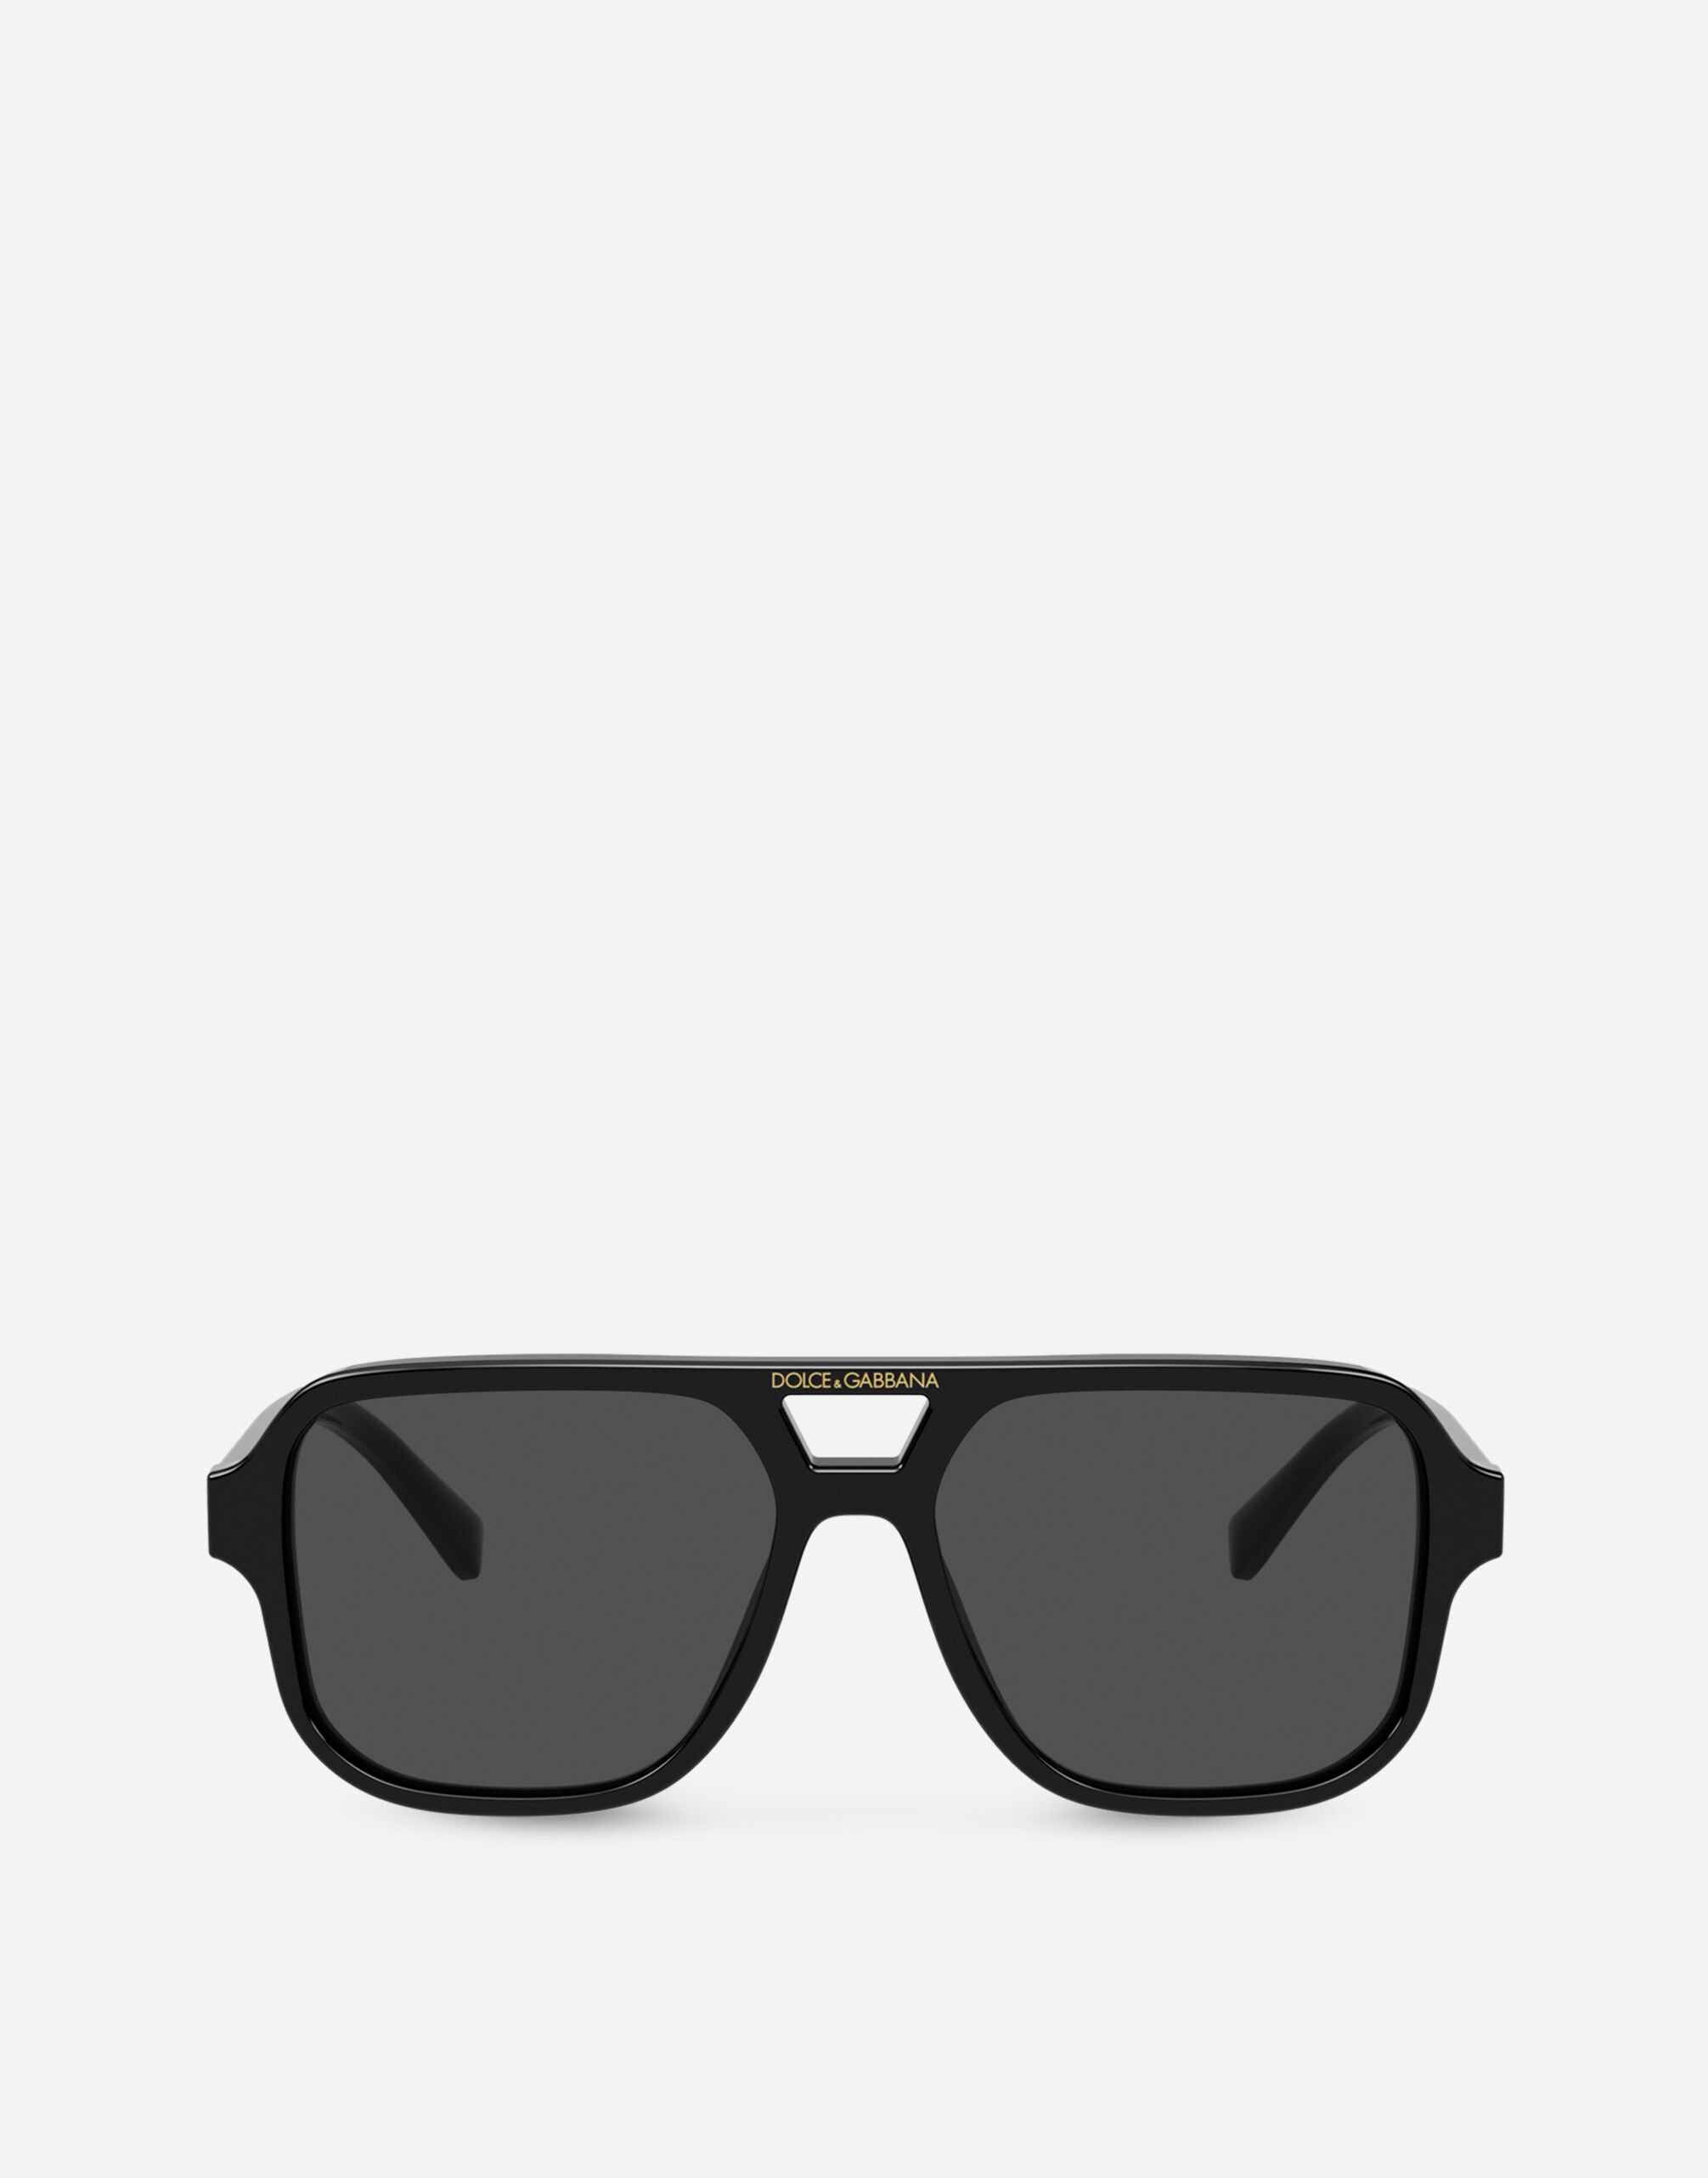 Dolce & Gabbana Think Black Sunglasses Black EM0125AB205